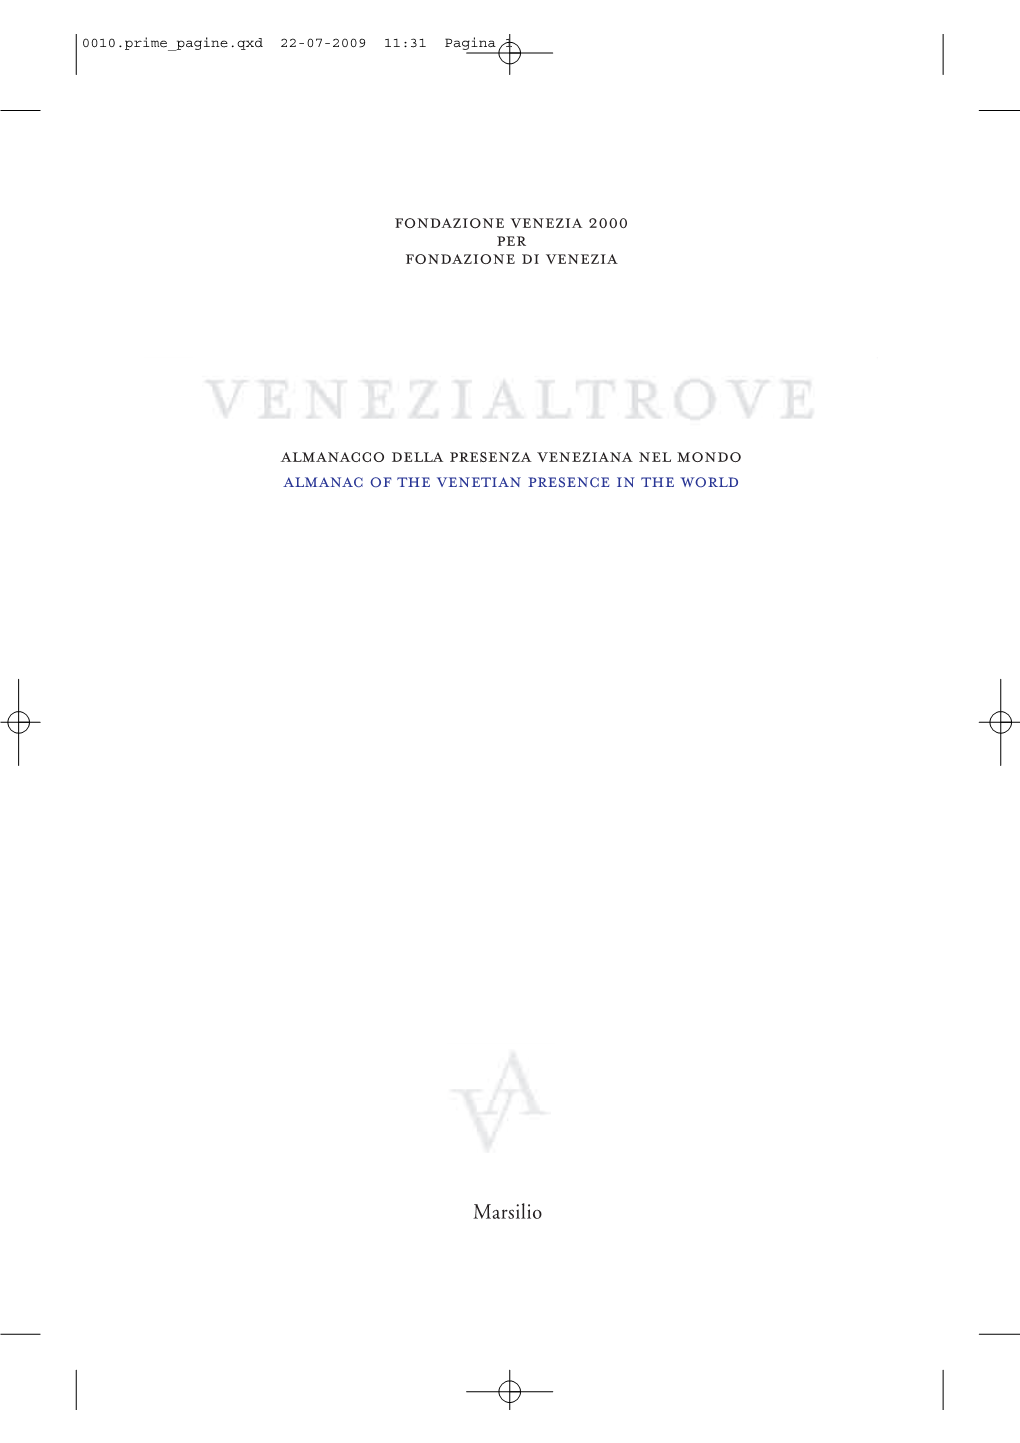 Almanacco Della Presenza Veneziana Nel Mondo Almanac of the Venetian Presence in the World